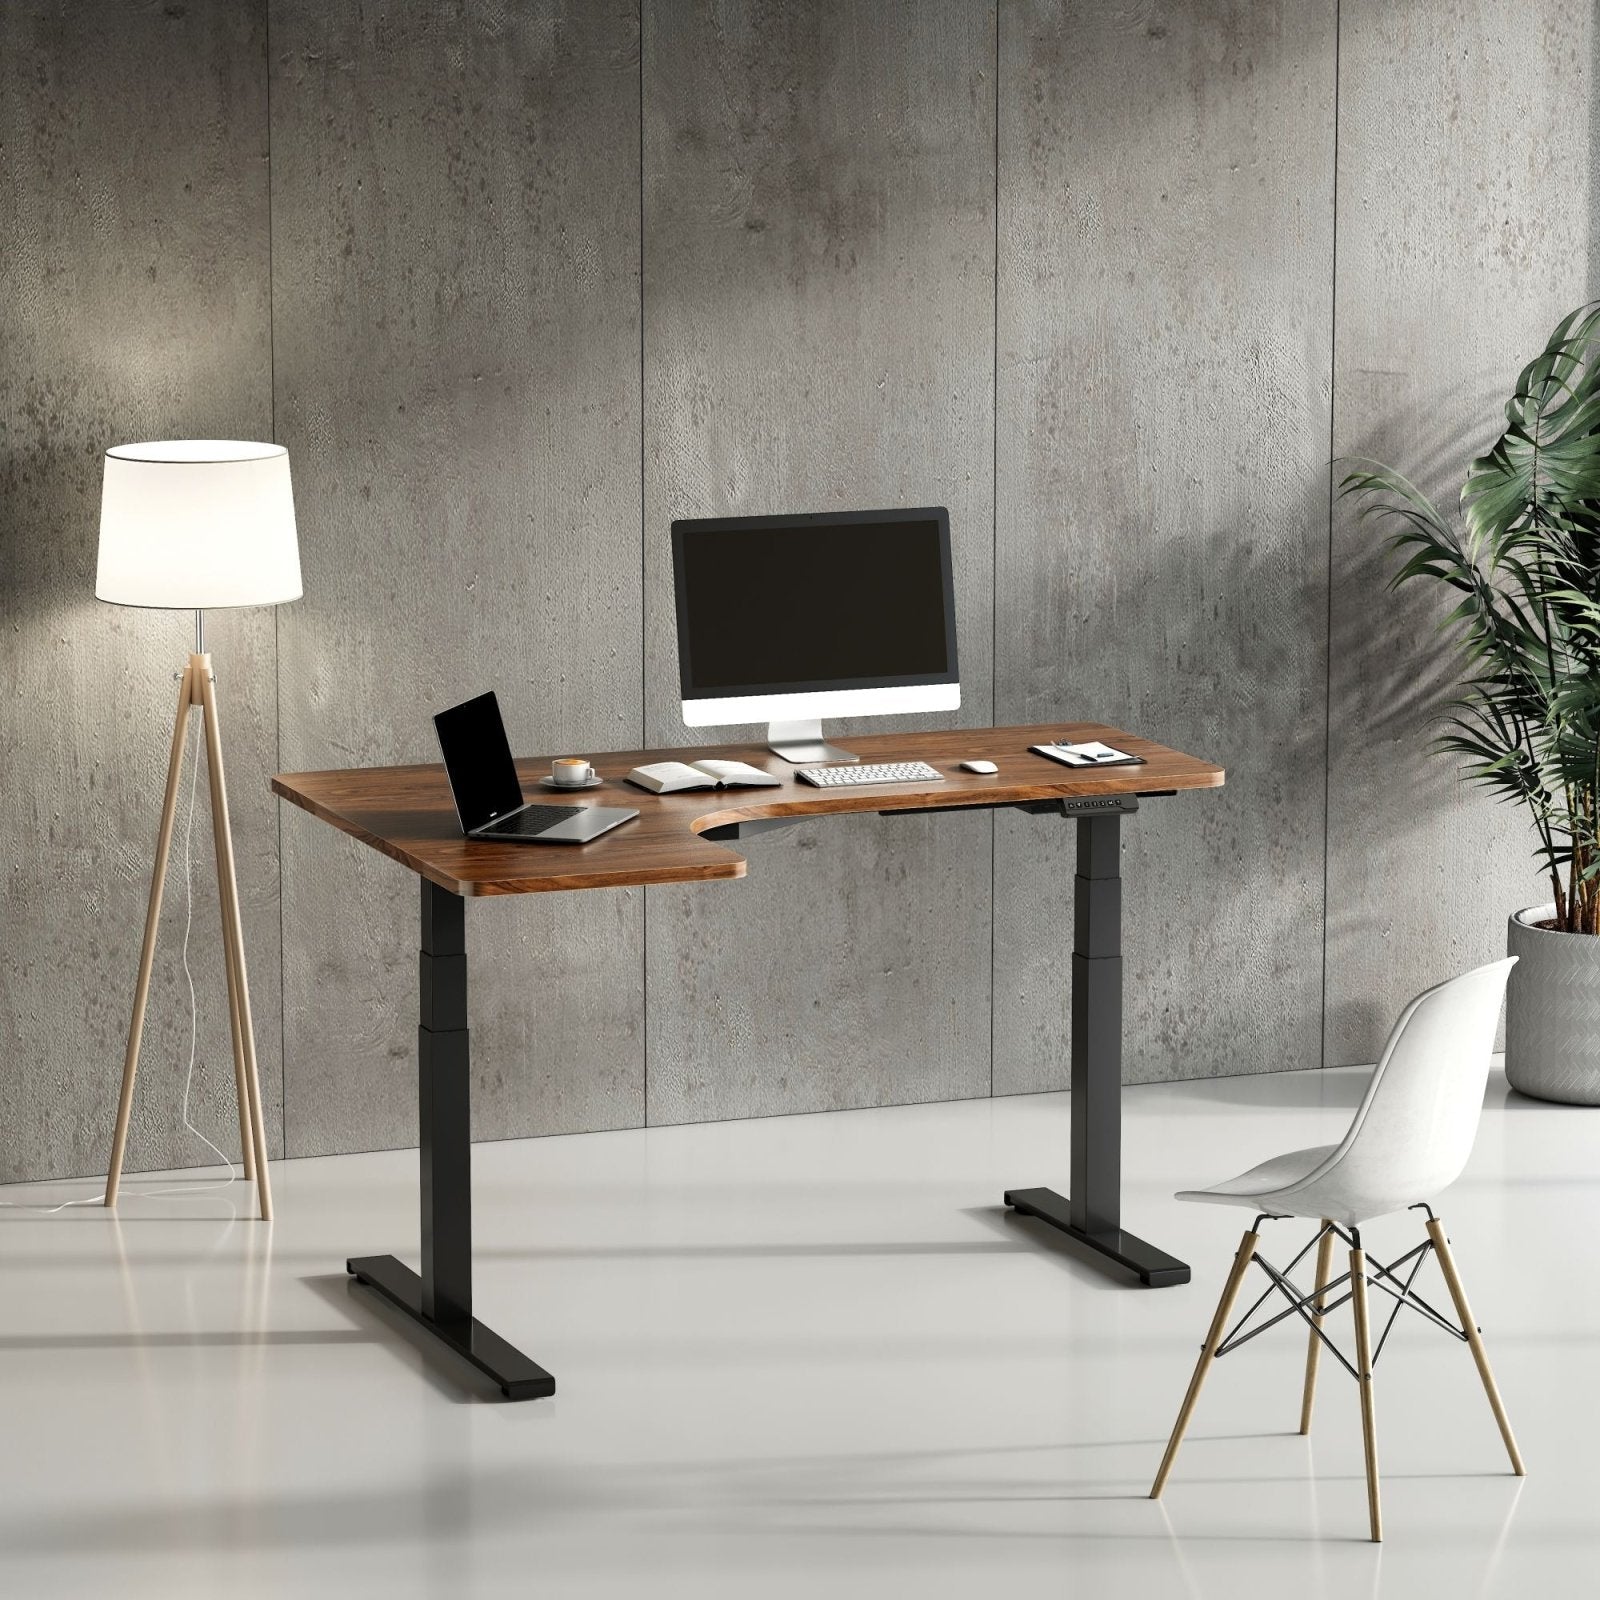 StandXT Tischplatte Schreibtischplatte 120 x 75 x 2.5 cm - Bürotisch Arbeitsplatte, hohe Kratzfestigkeit und bis zu 120 kg belastbar